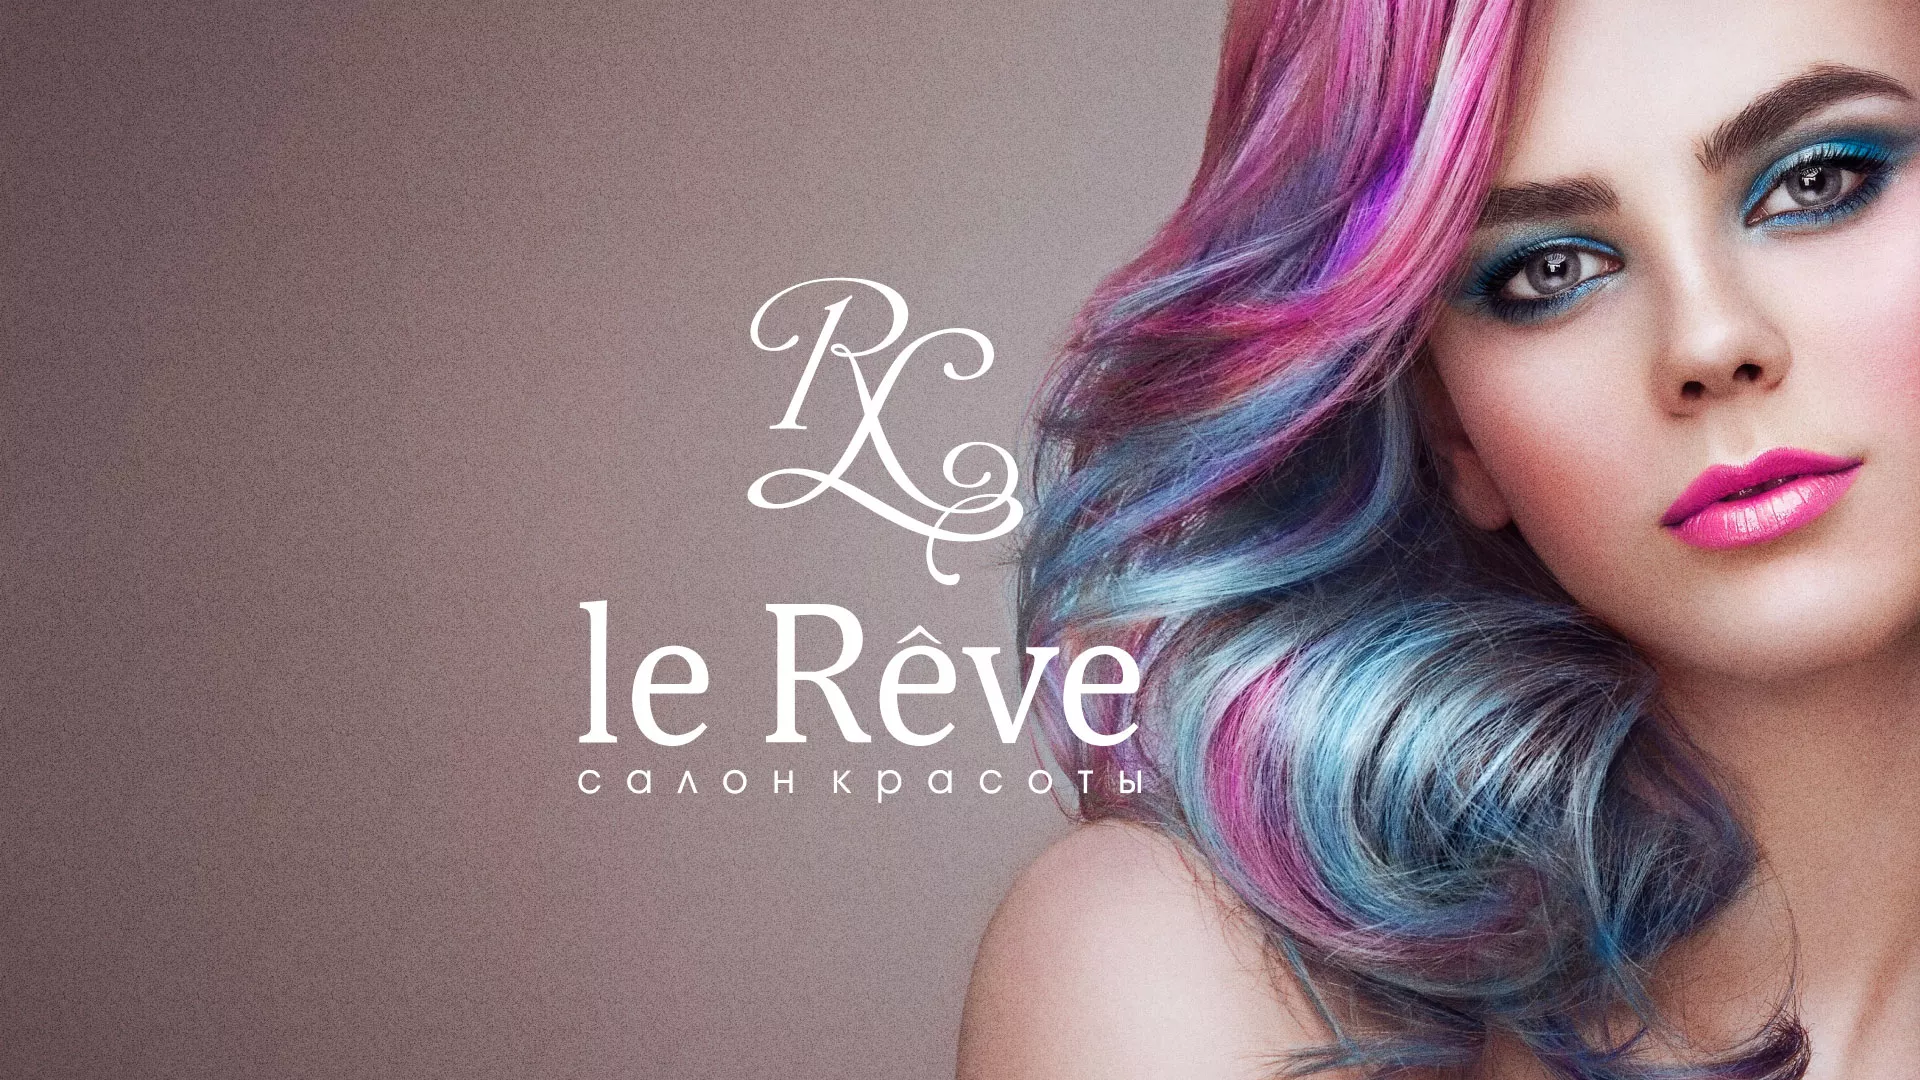 Создание сайта для салона красоты «Le Reve» в Сураже